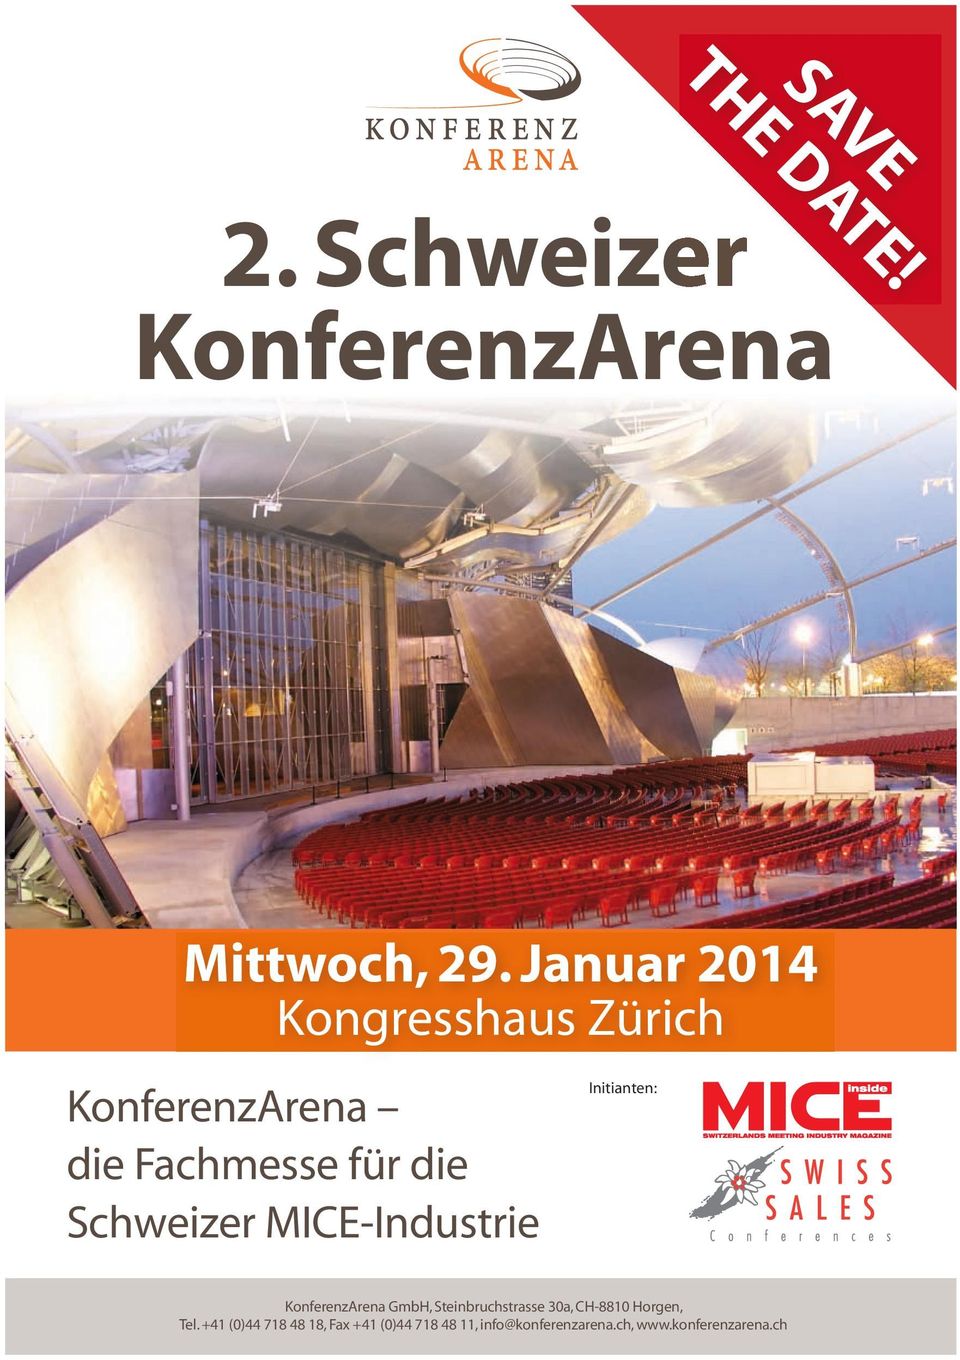 MICE-Industrie Initianten: KonferenzArena GmbH, Steinbruchstrasse 30a, CH-8810 Horgen, Tel.